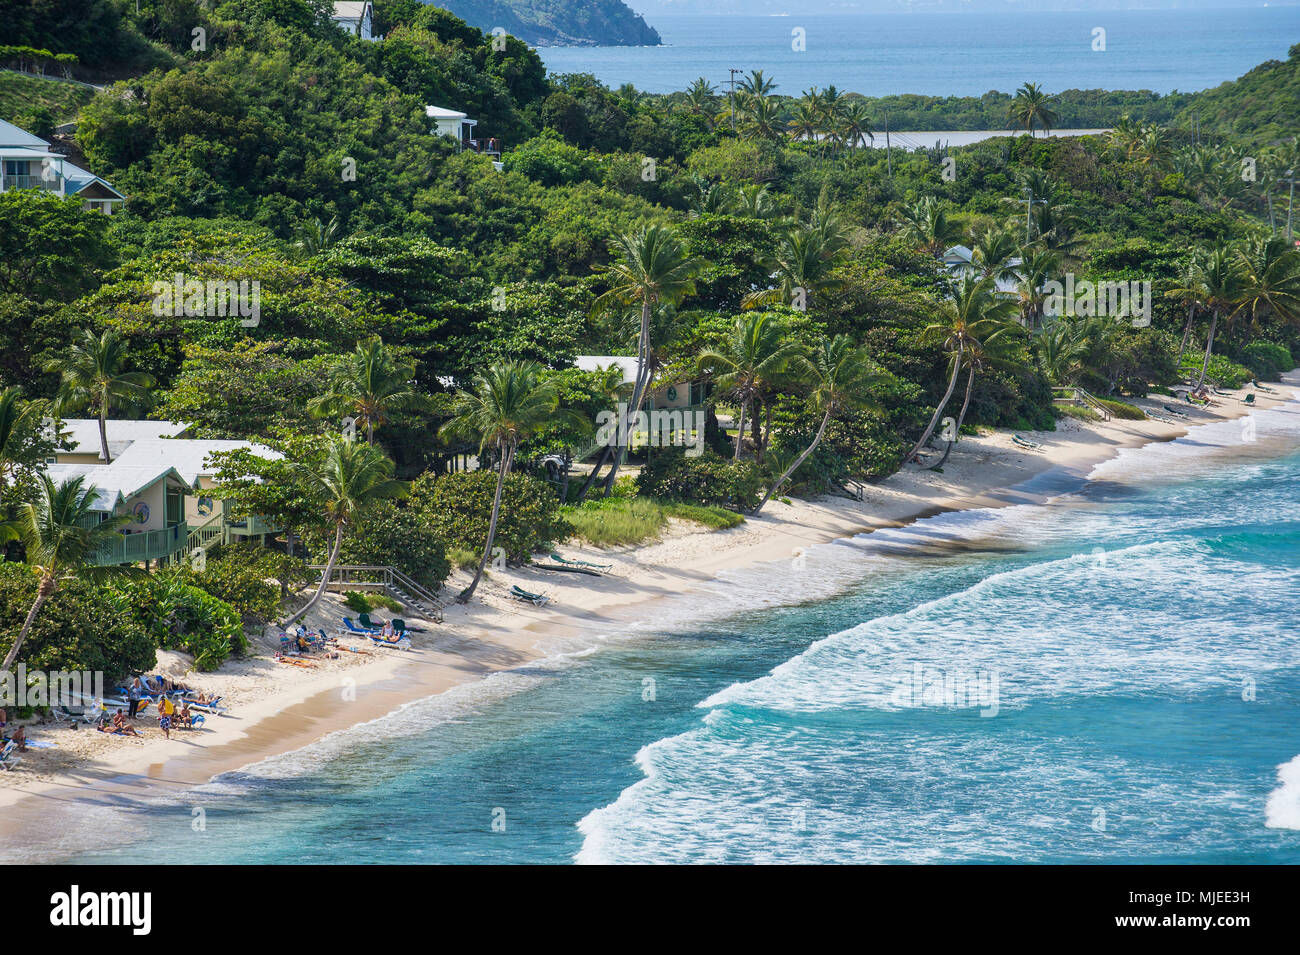 Overlook over Long Beach, Tortola, British Virgin Islands Stock Photo